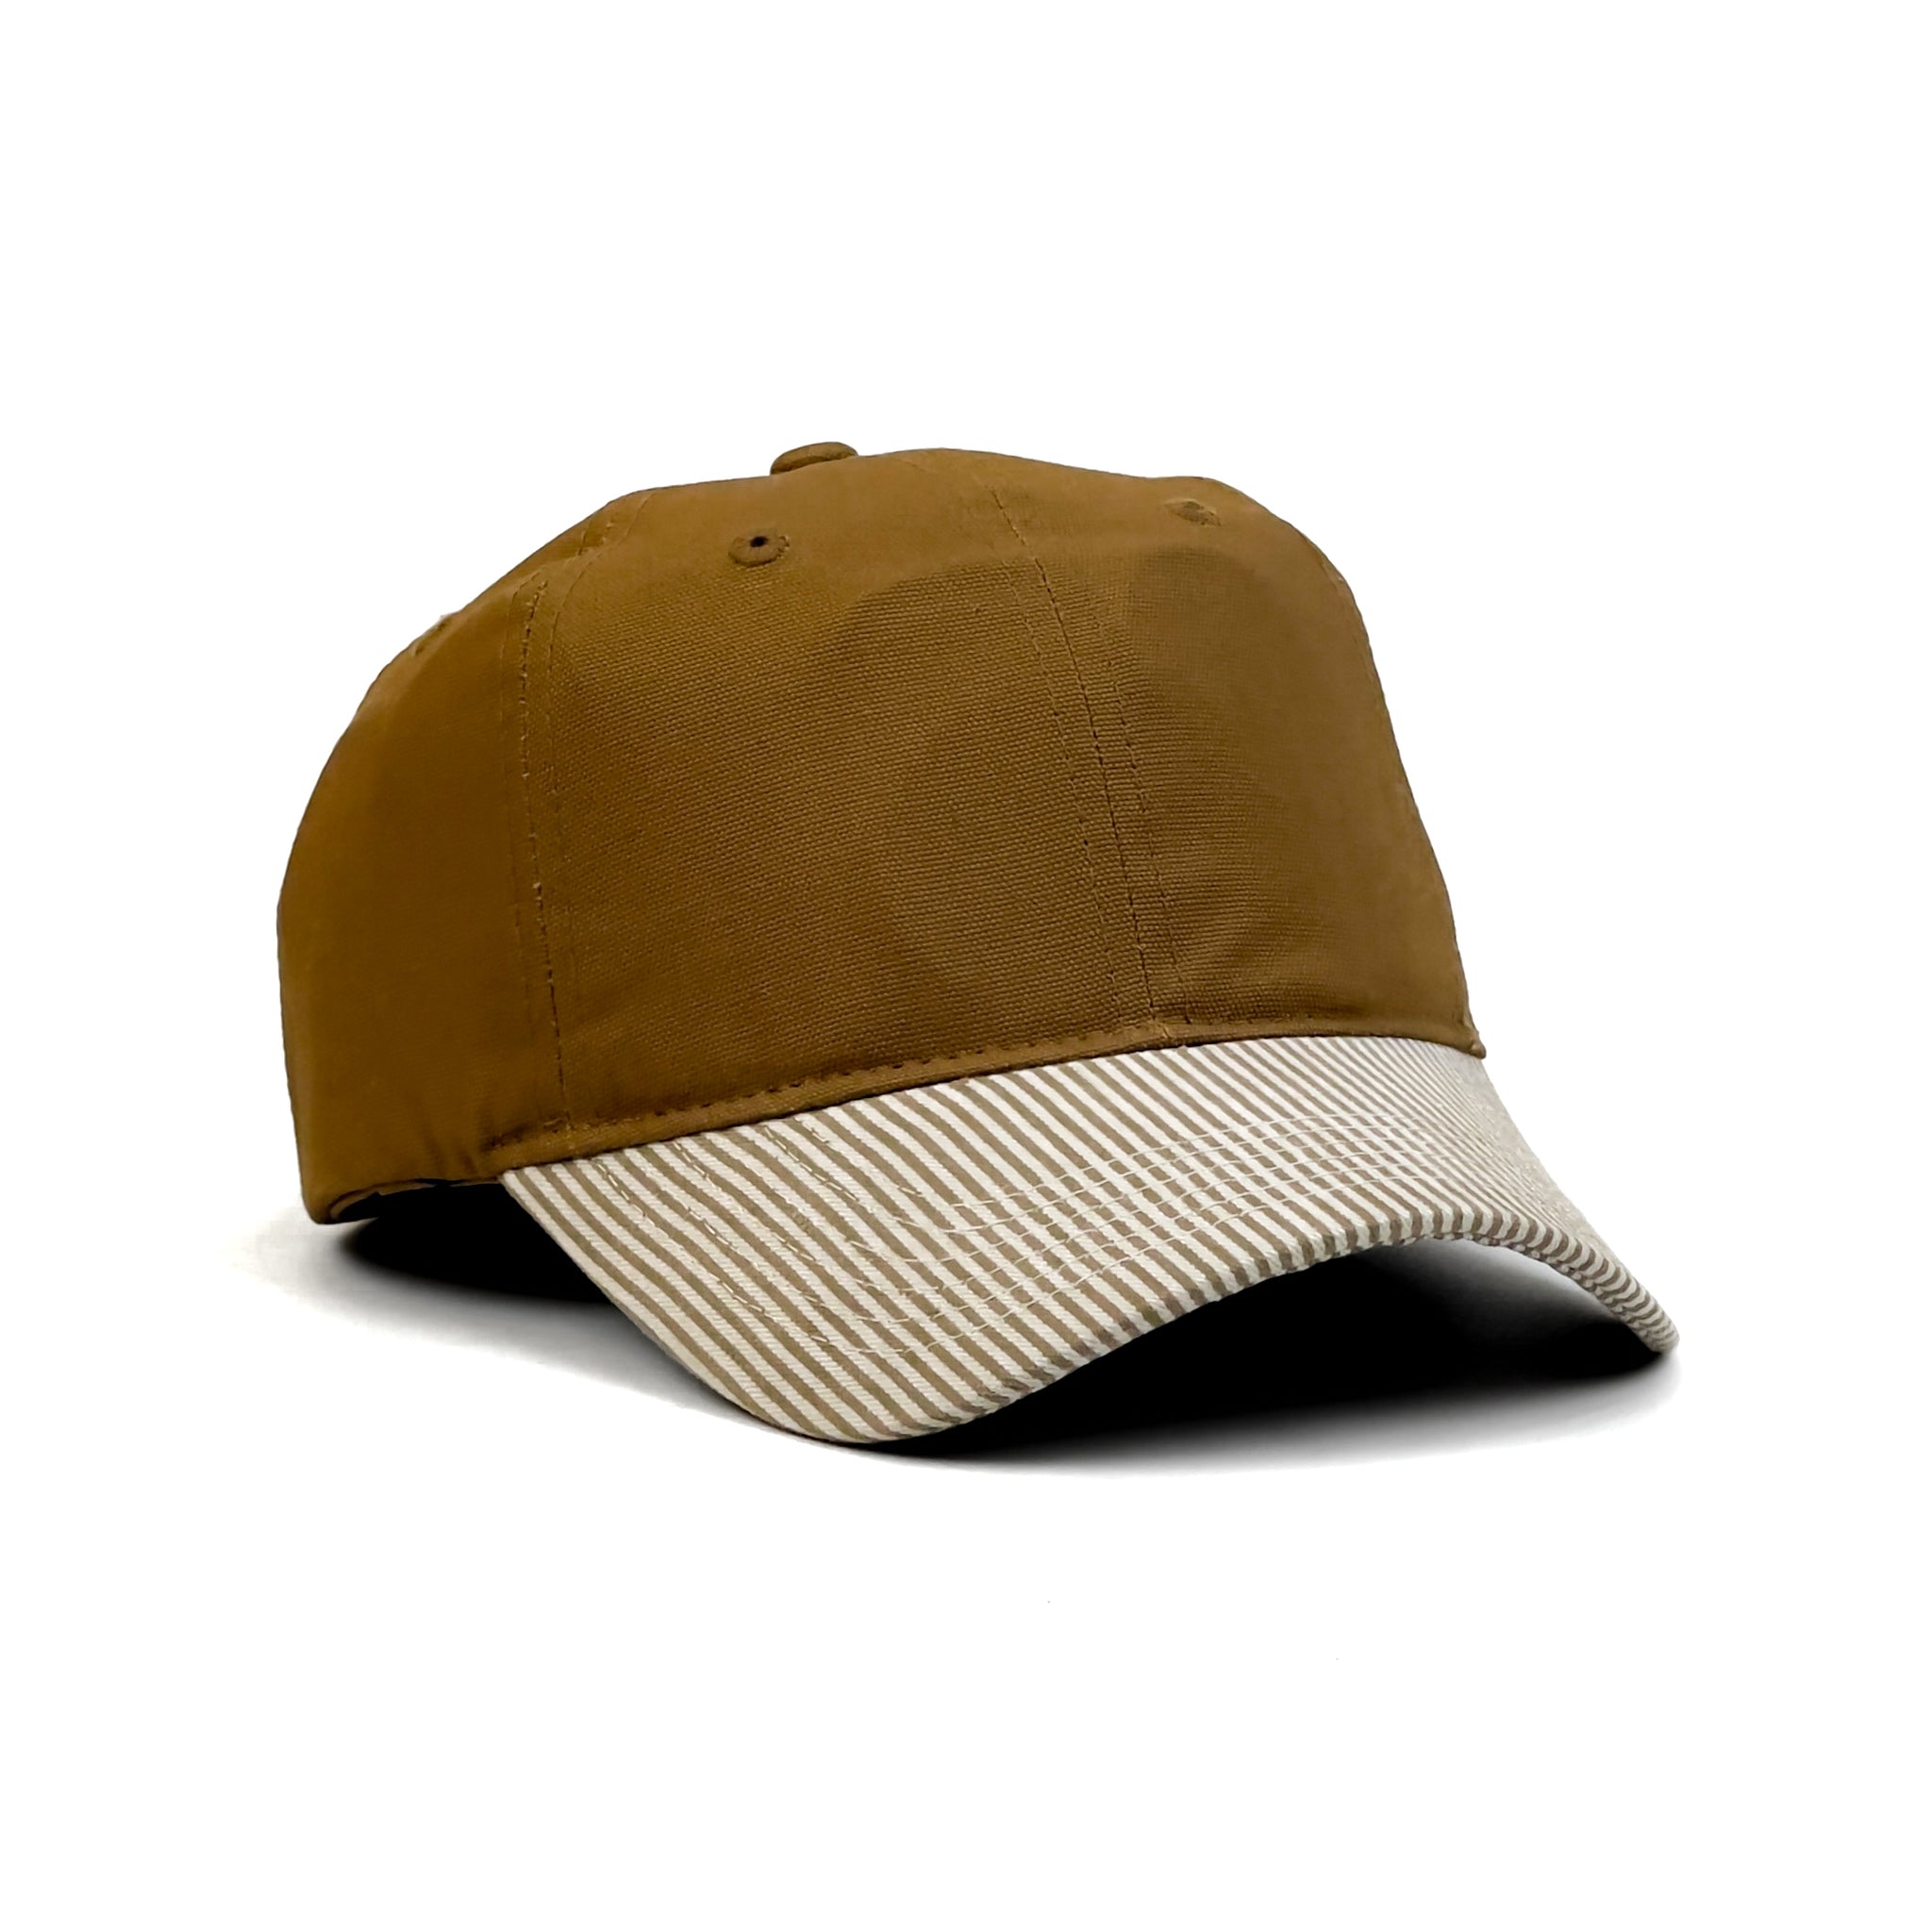 HEAD GEAR CHOCO STRIPED CAP